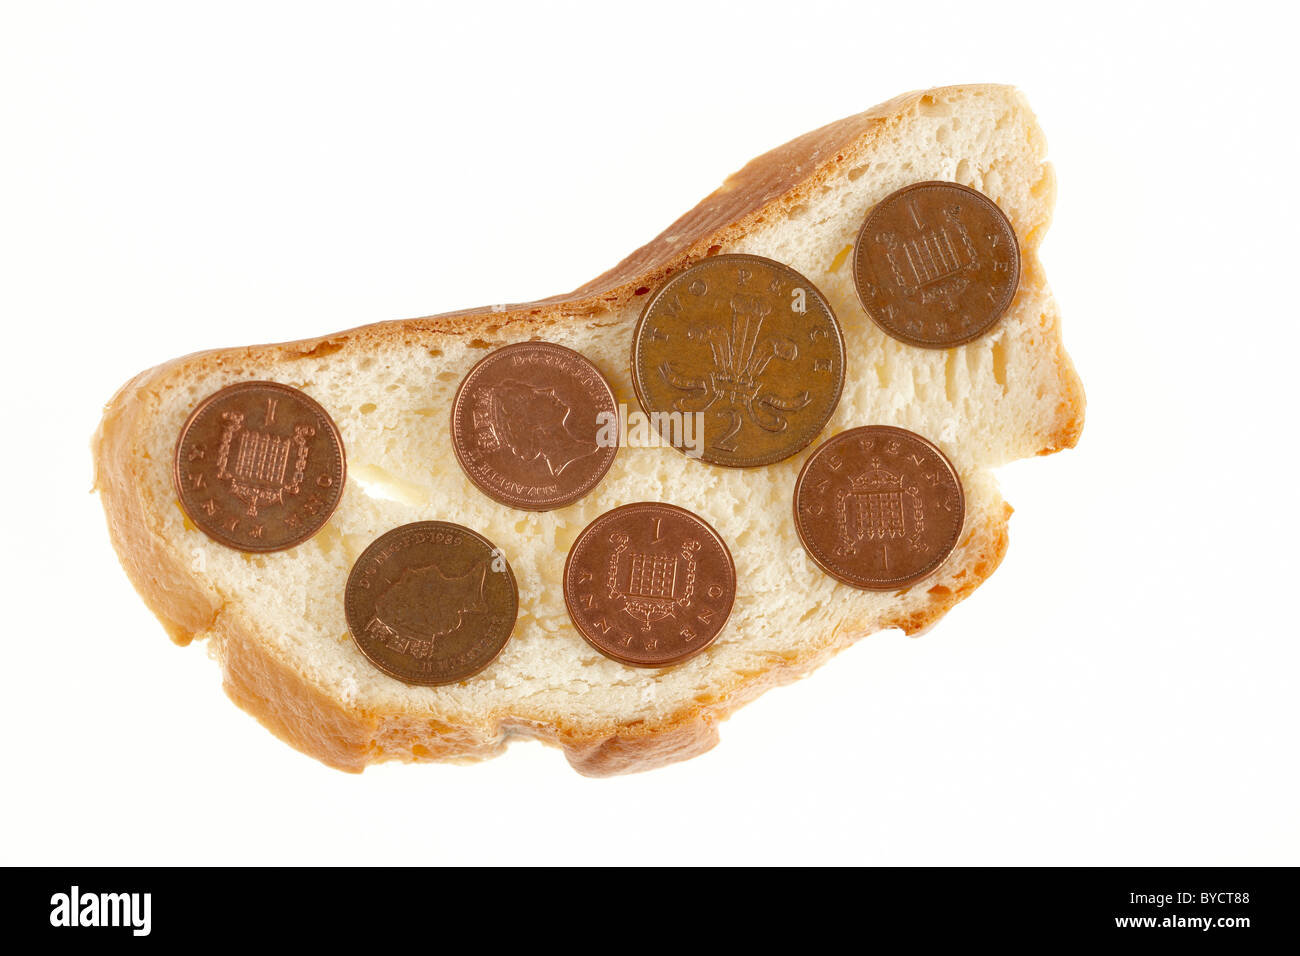 Fetta di pane raffermo con monete del Regno Unito su di esso. Foto Stock